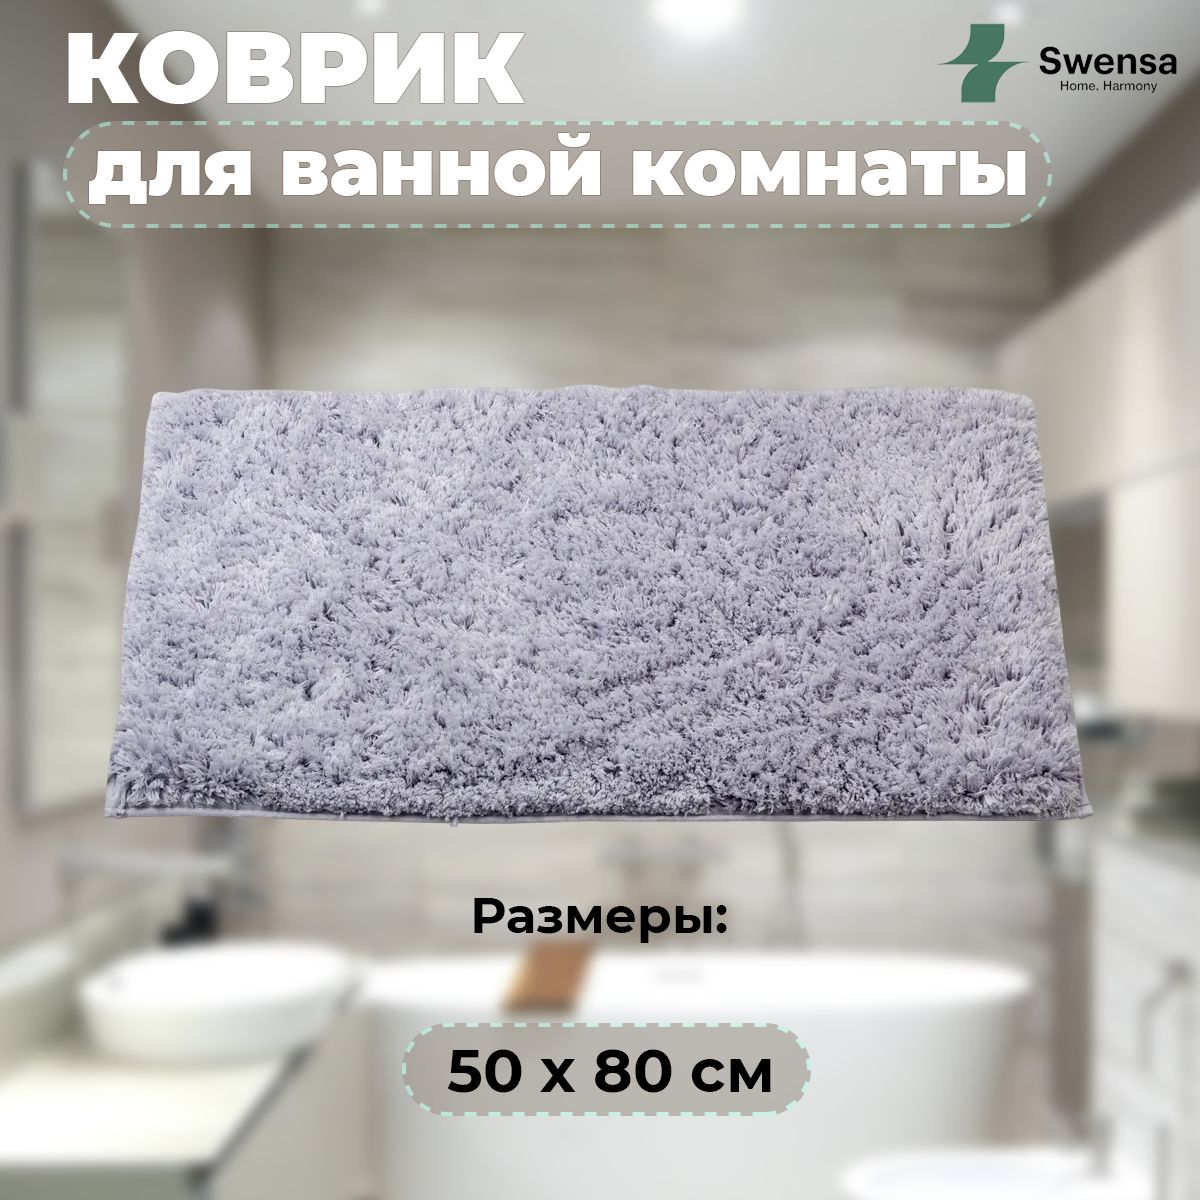 Размеры коврика для ванной комнаты 50 80